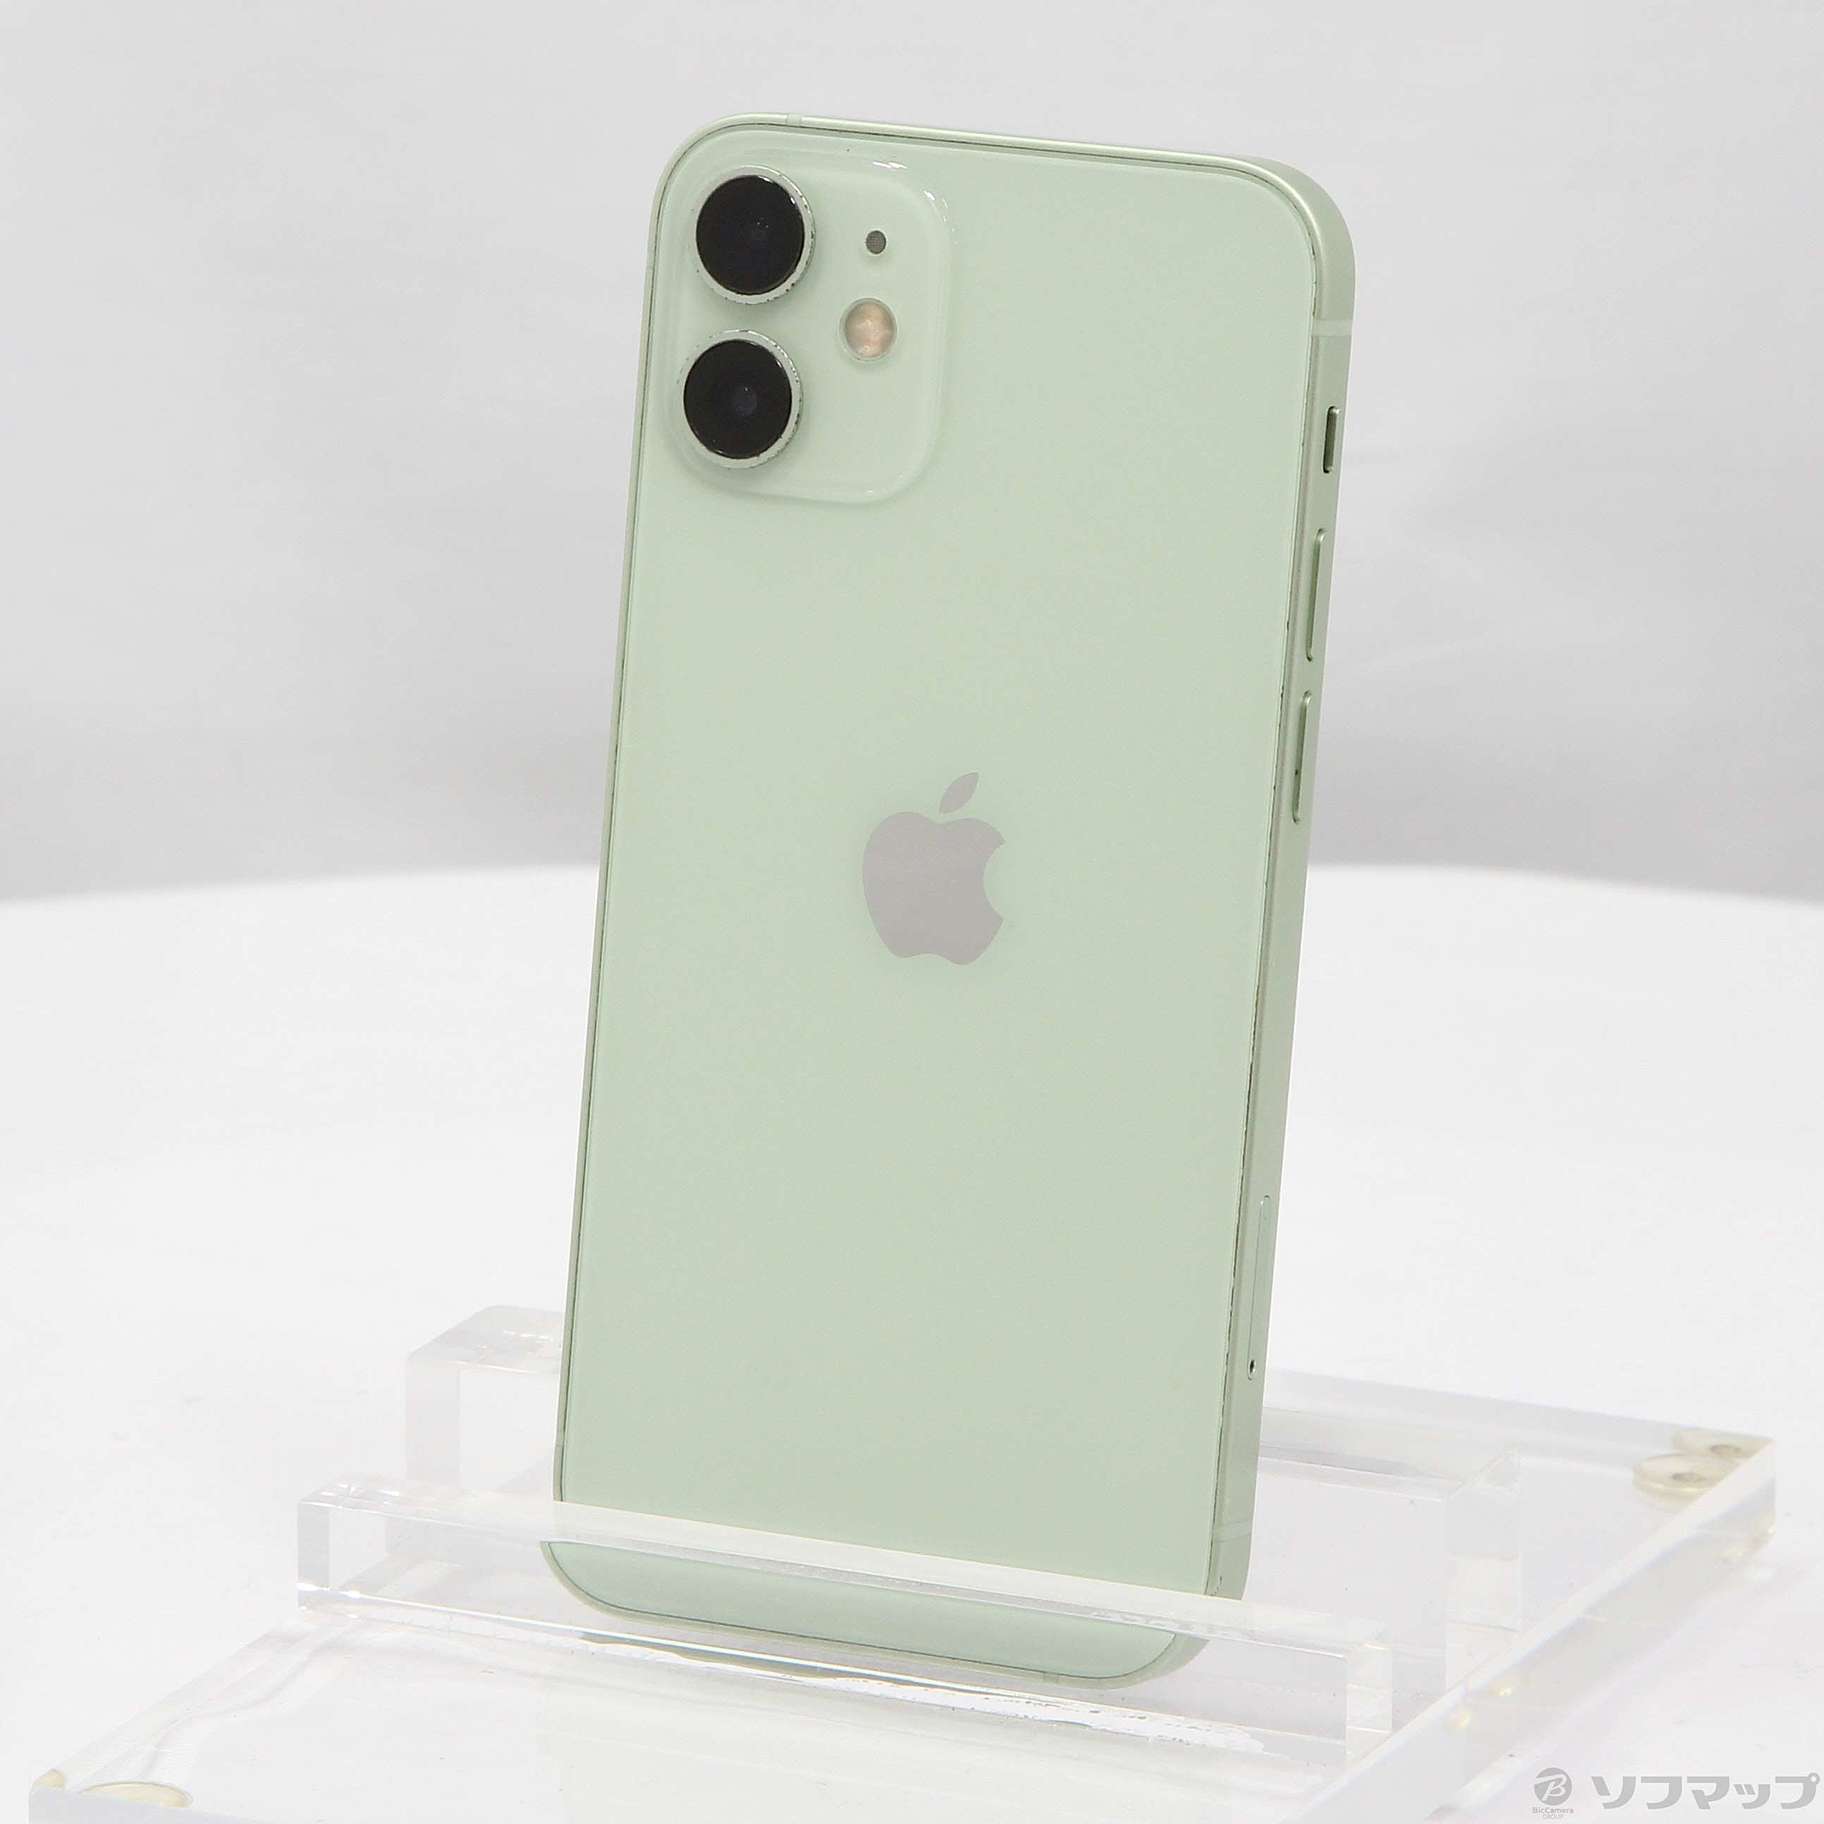 iPhone 12 mini green 256GB SIMフリーそれともPCに接続でしょうか